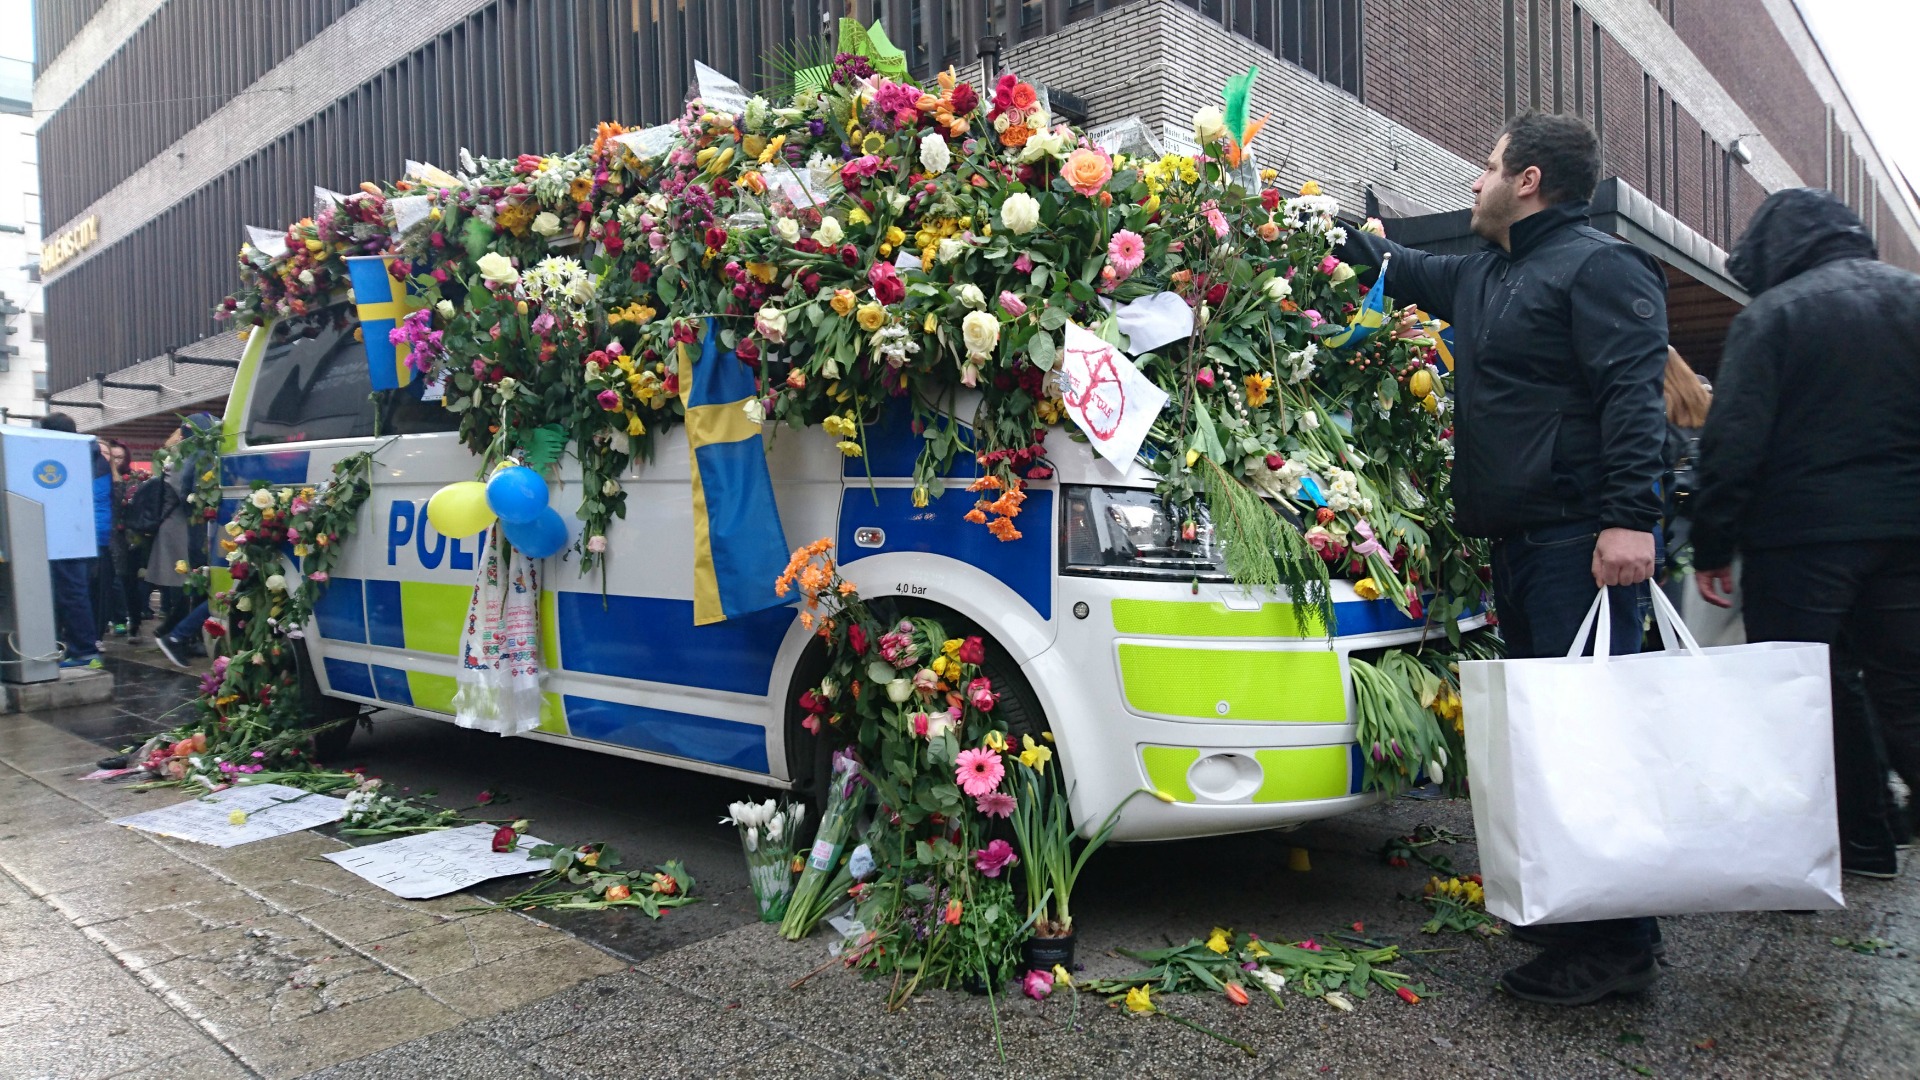 El sospechoso del atentado con un camión en Estocolmo se declara culpable